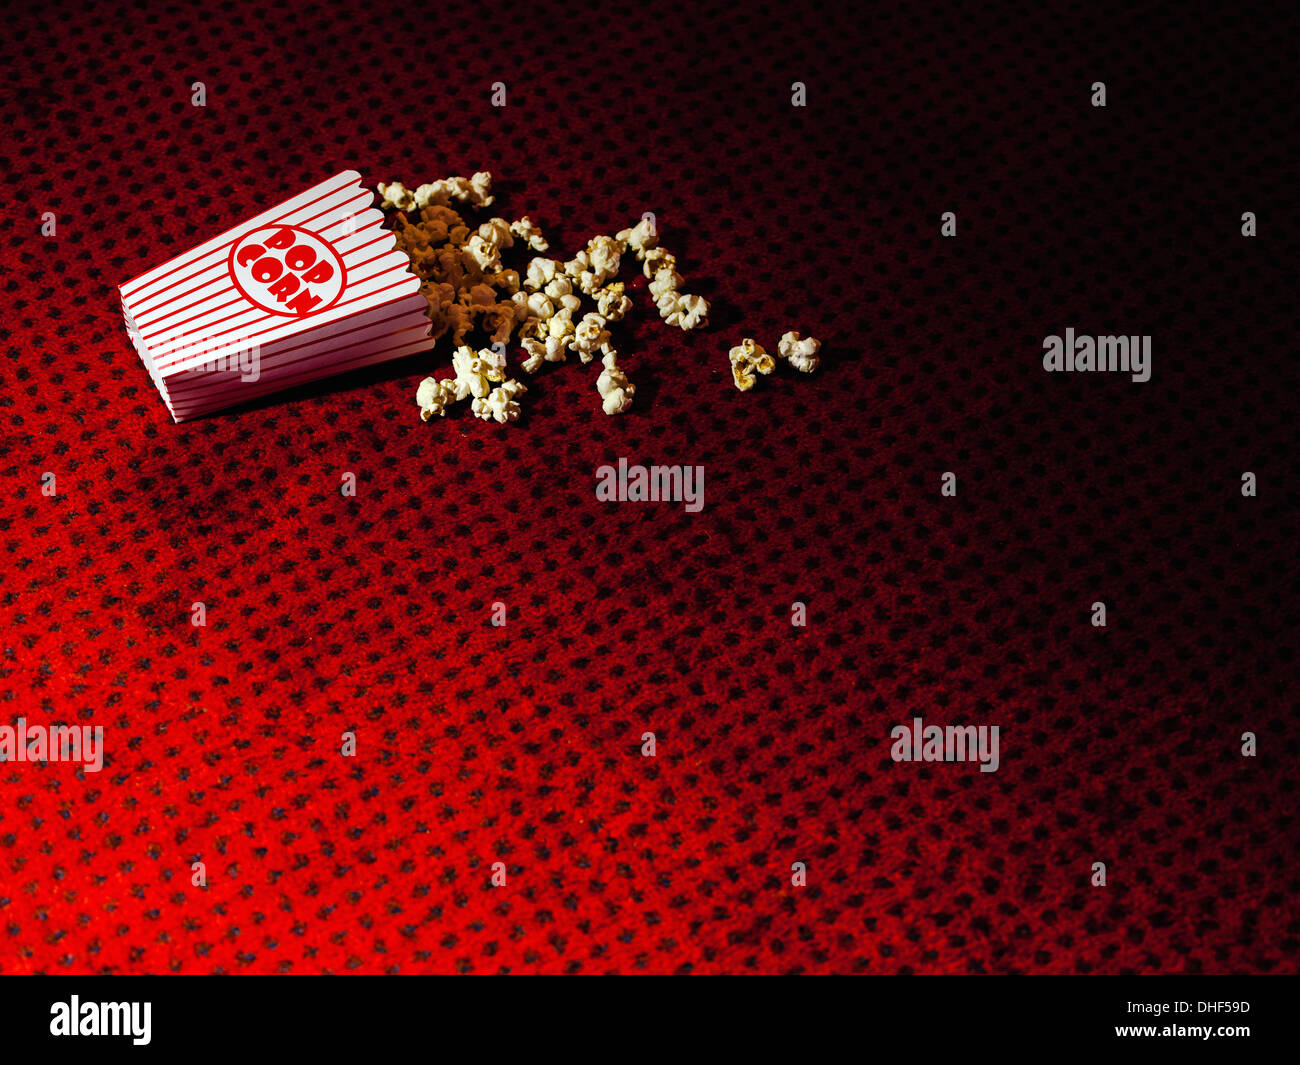 Carton renversé de popcorn sur cinema carpet Banque D'Images